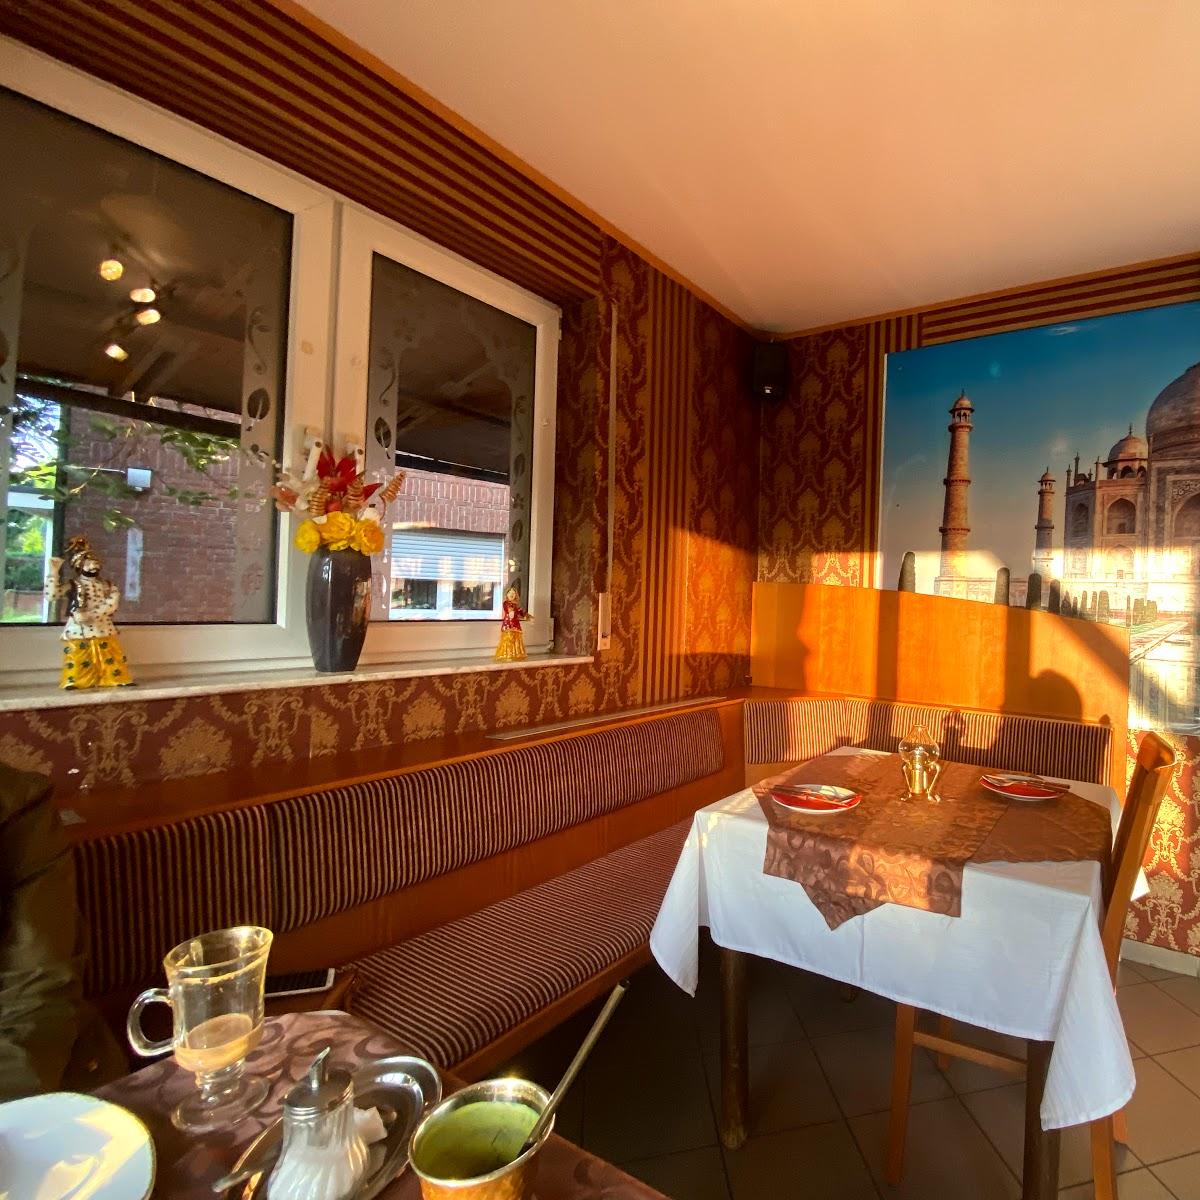 Restaurant "Royal India" in Troisdorf